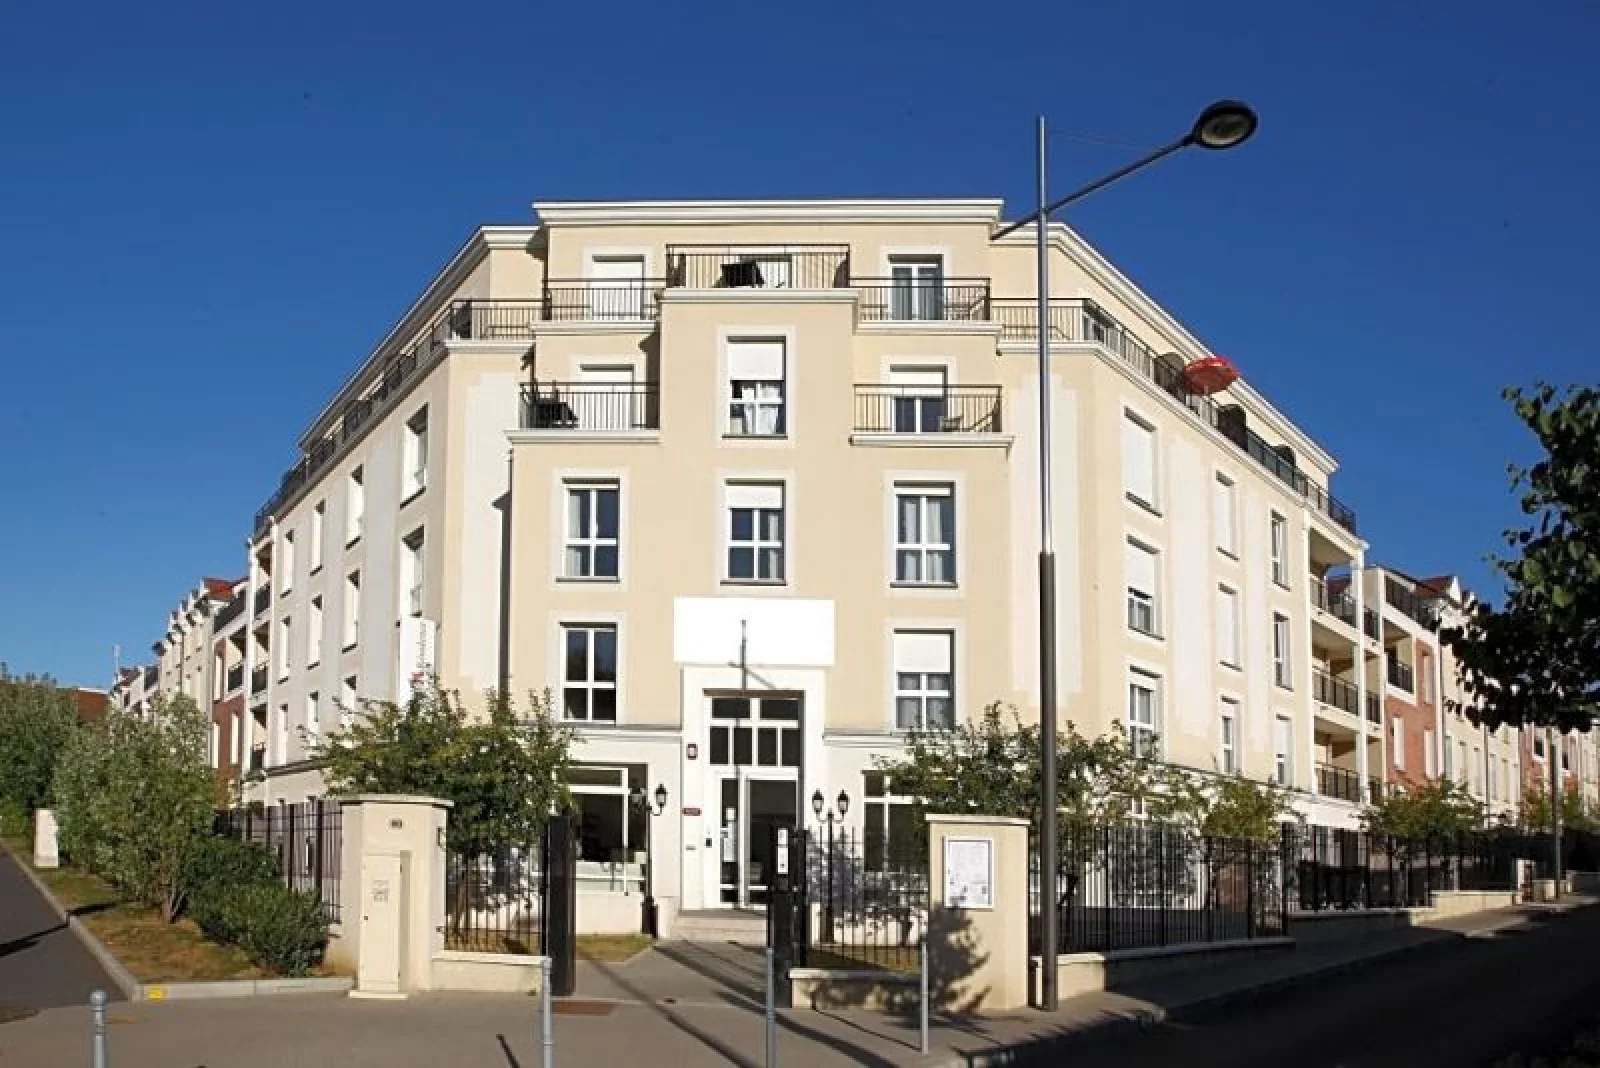 Location appartement meublé 2 pièces 41m² (Paris est - Bry sur Marne)